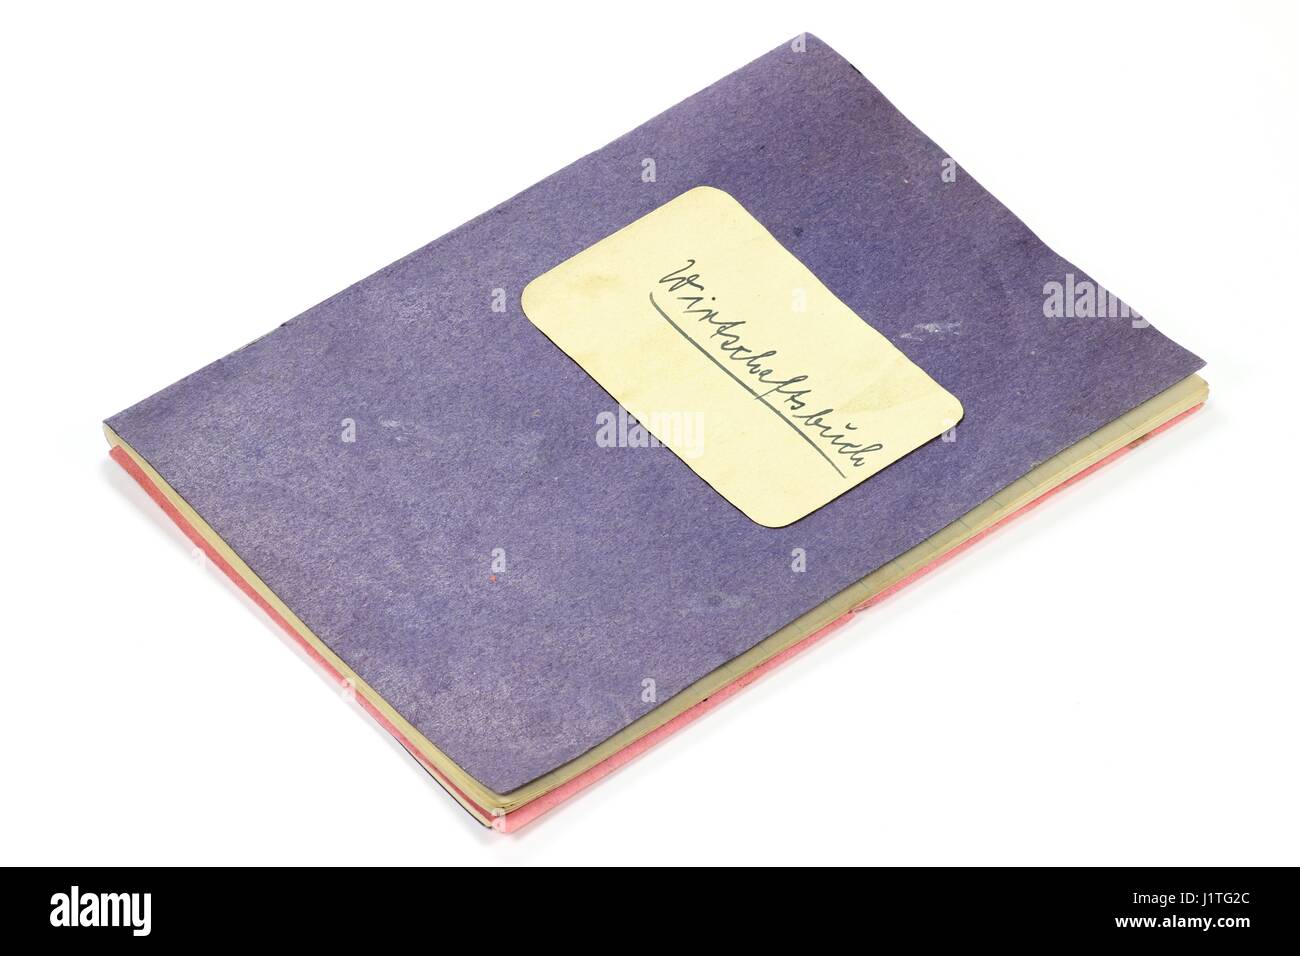 Antico tedesco le pulizie libro isolato su sfondo bianco Foto Stock